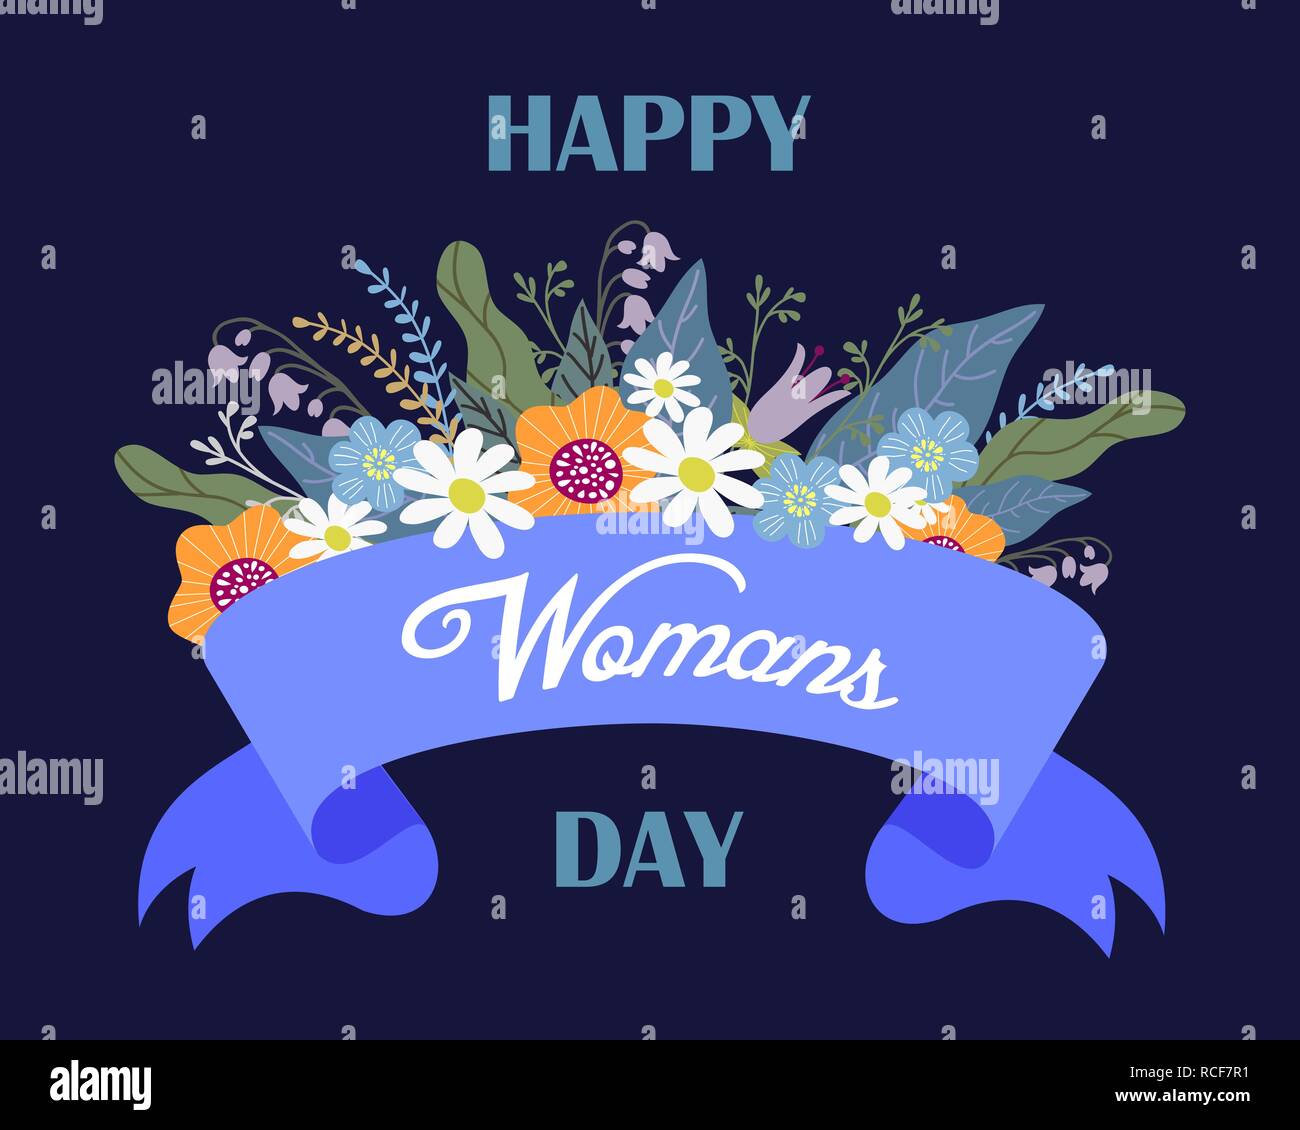 Happy womans Tag, Floral Hand zeichnen Design Konzept, Blumenstrauß und Band mit Text-, Vektor Stock Vektor